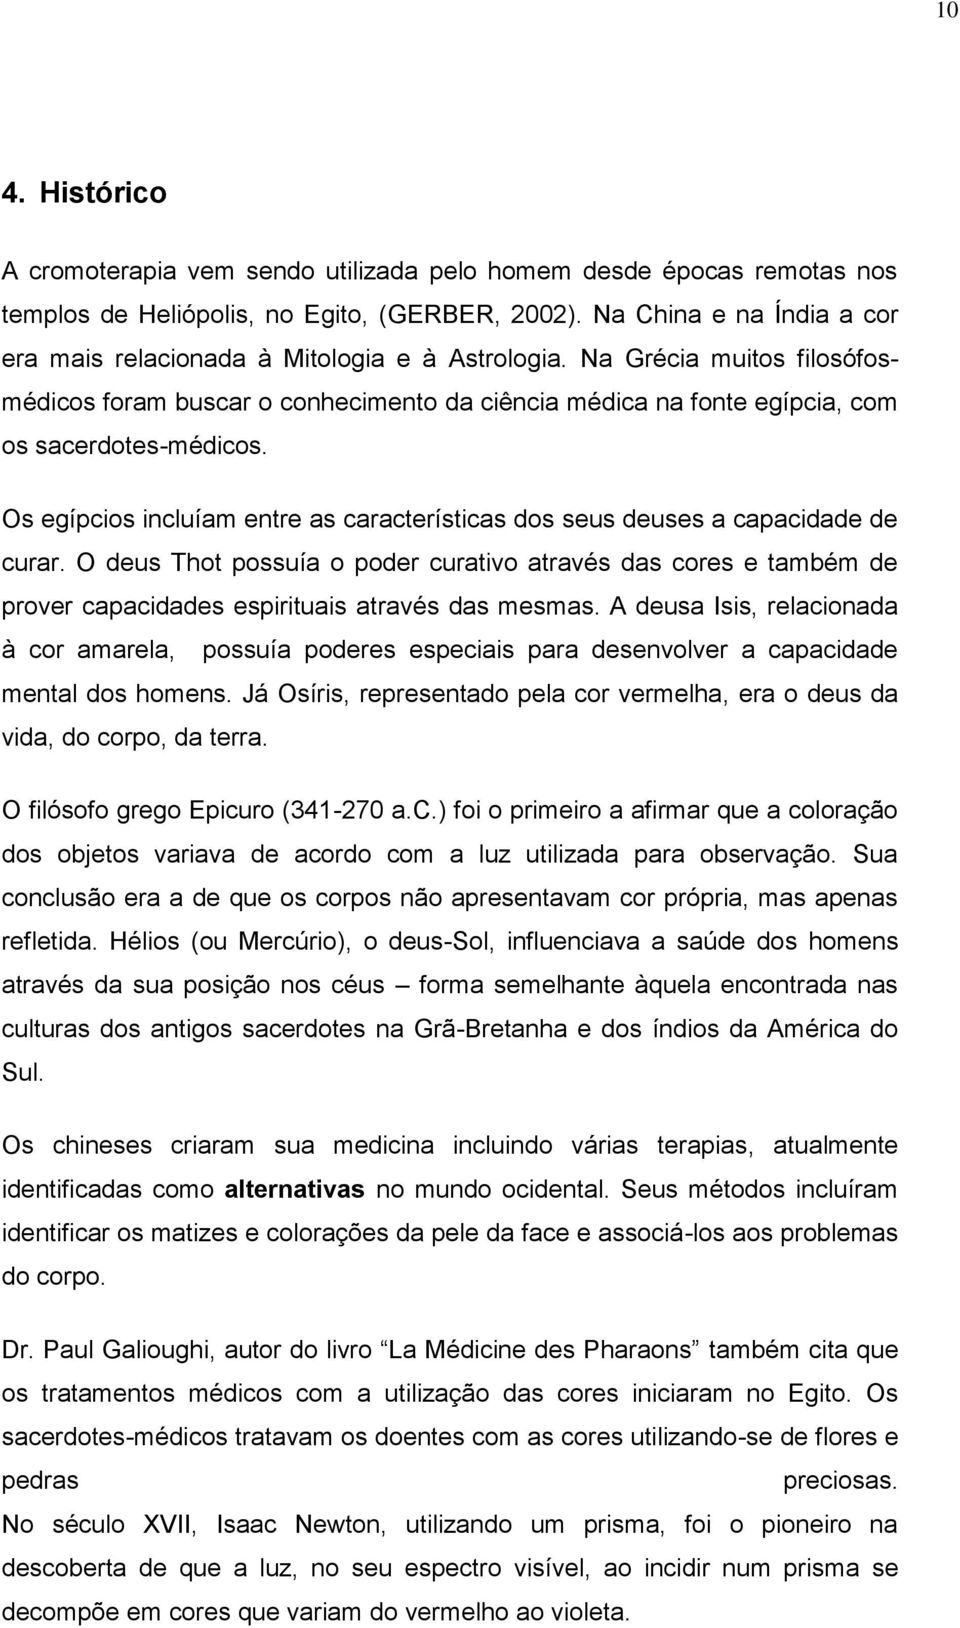 CELIA MARIA DE PAIVA - PDF Download grátis